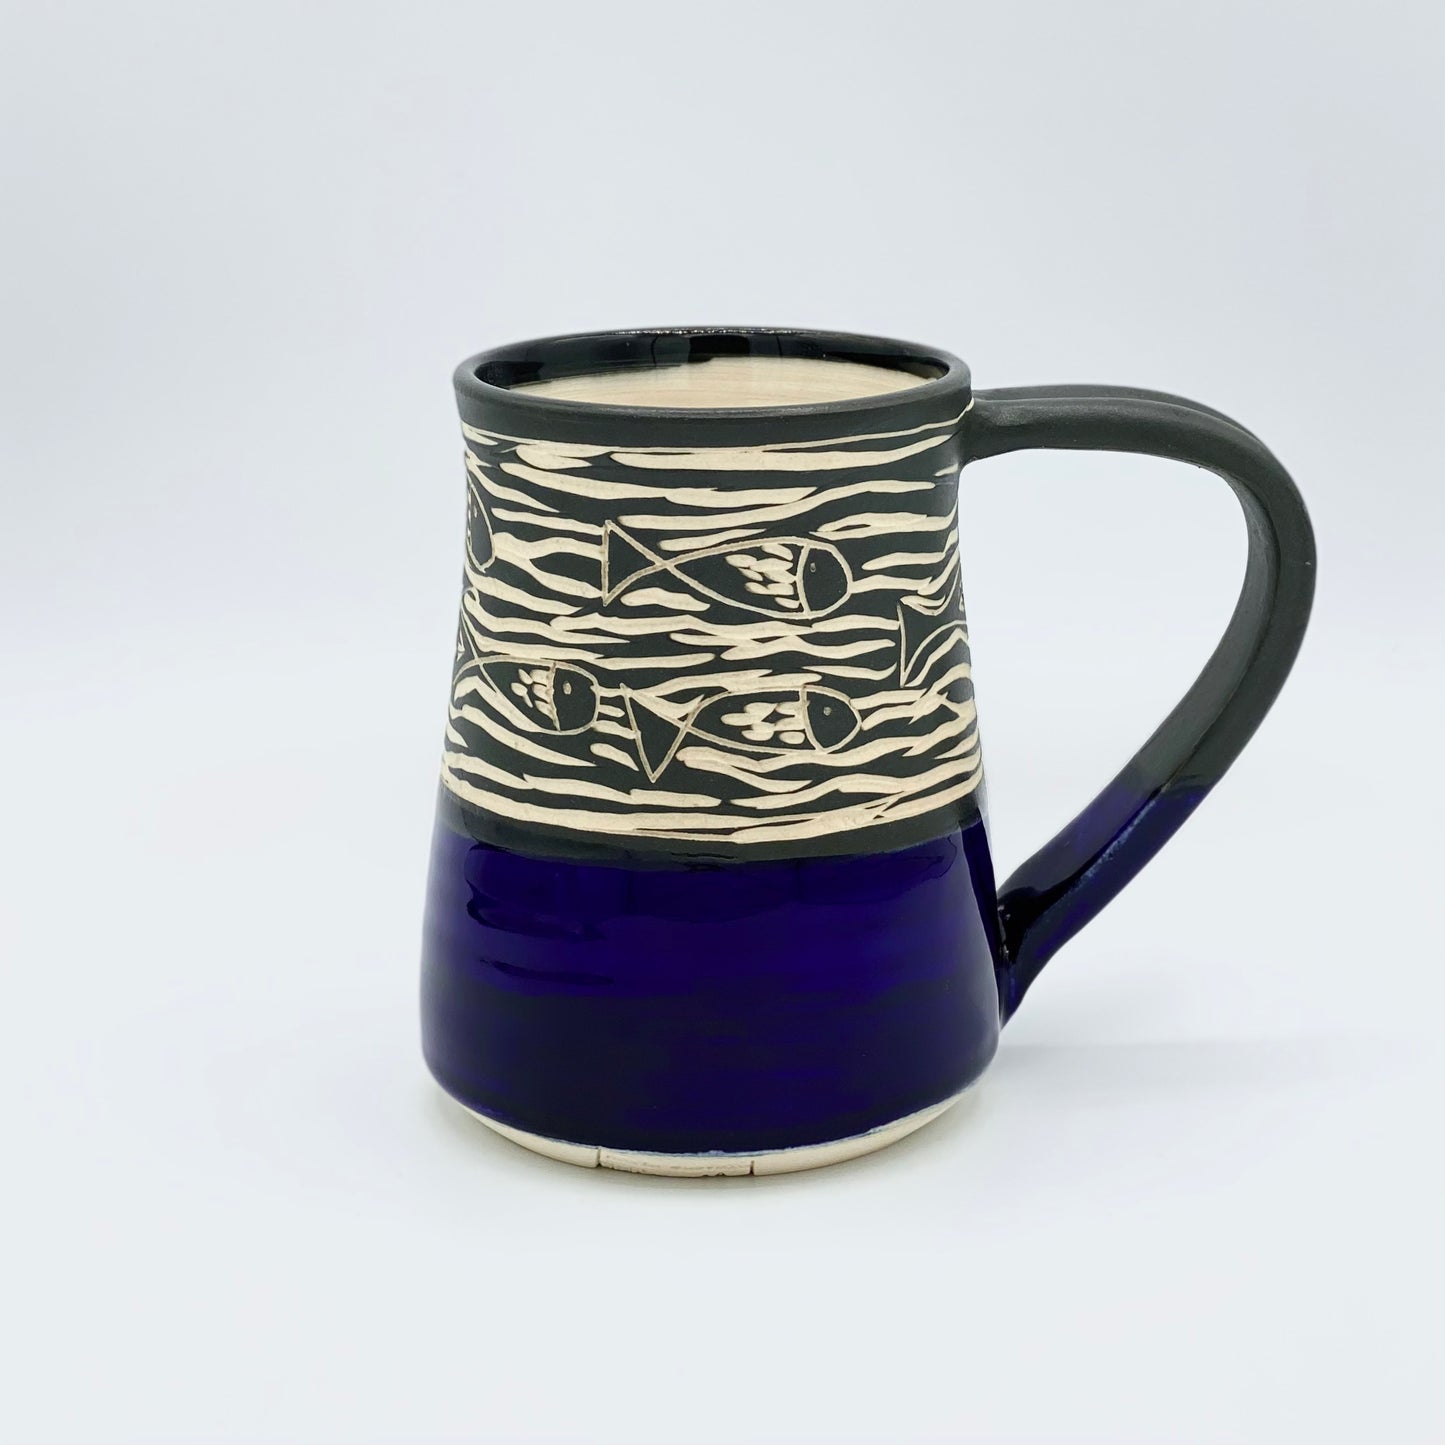 Mug by Maru Pottery